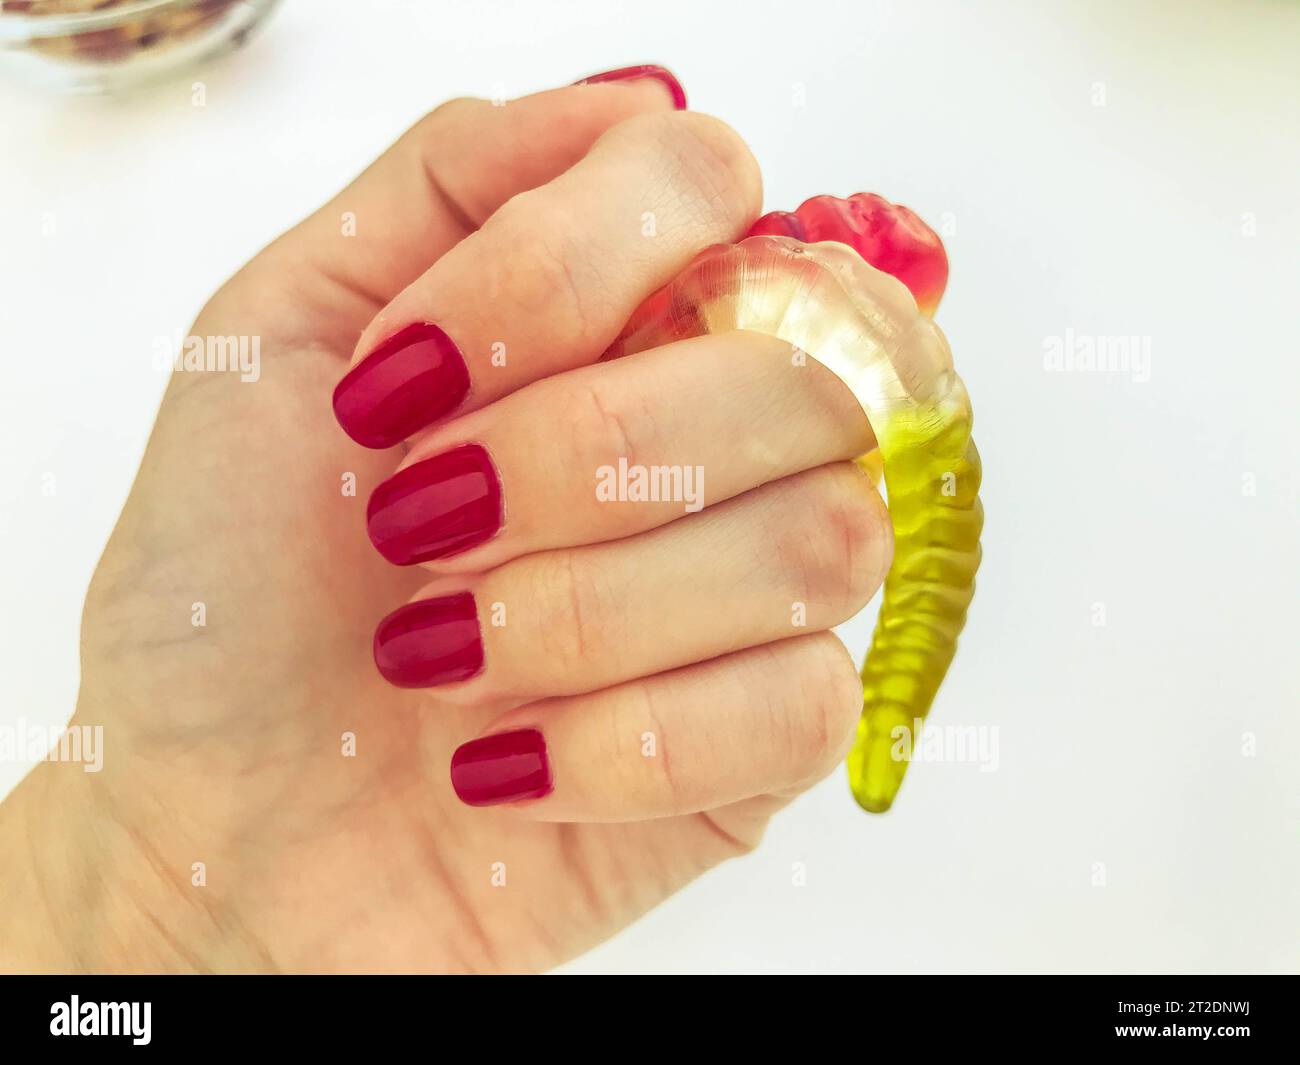 Eine Menge Gummiwürmer liegen bei einem Mädchen mit einer roten Maniküre auf einem orange matten Hintergrund. Köstliches, appetitliches Dessert. Handgemachte Würmer. Stockfoto